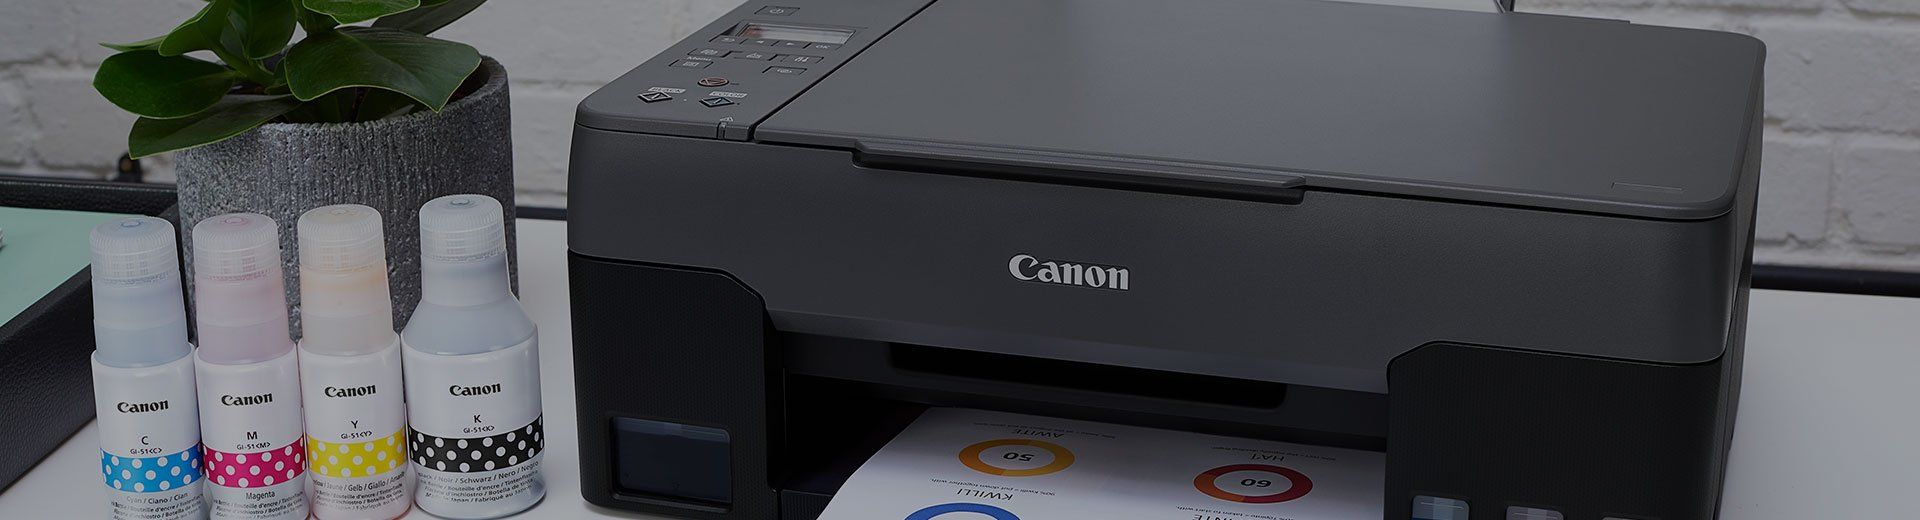 Canon Home Printers - Europe